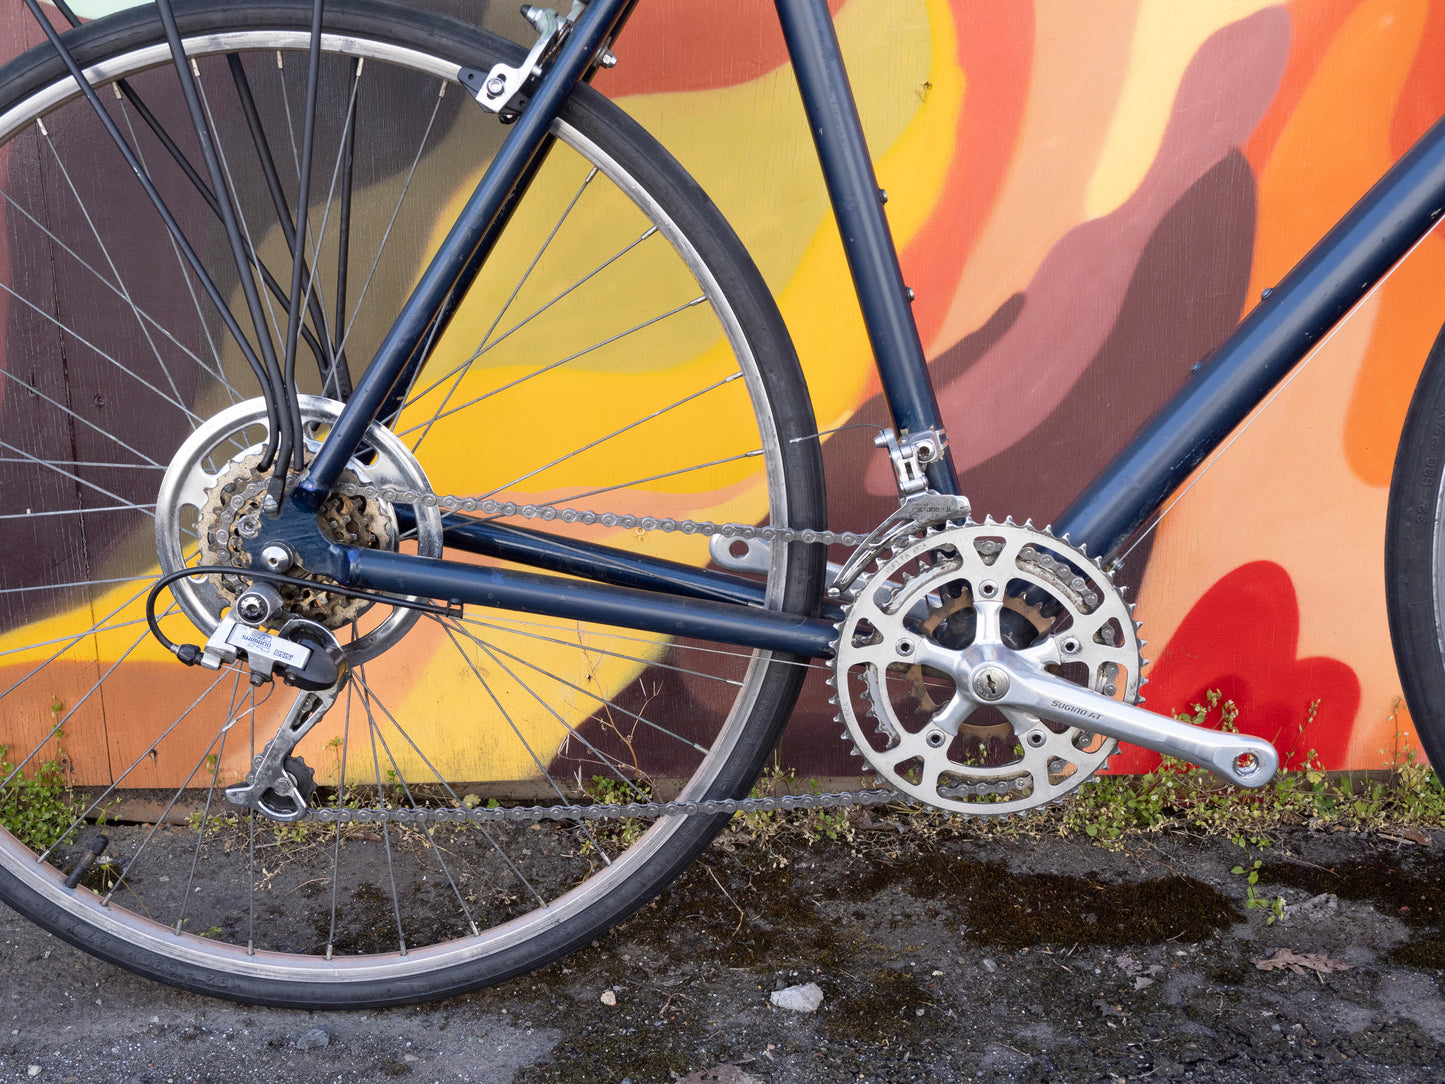 Cannondale aluminum commuter bike, navy blue, 58cm/Large